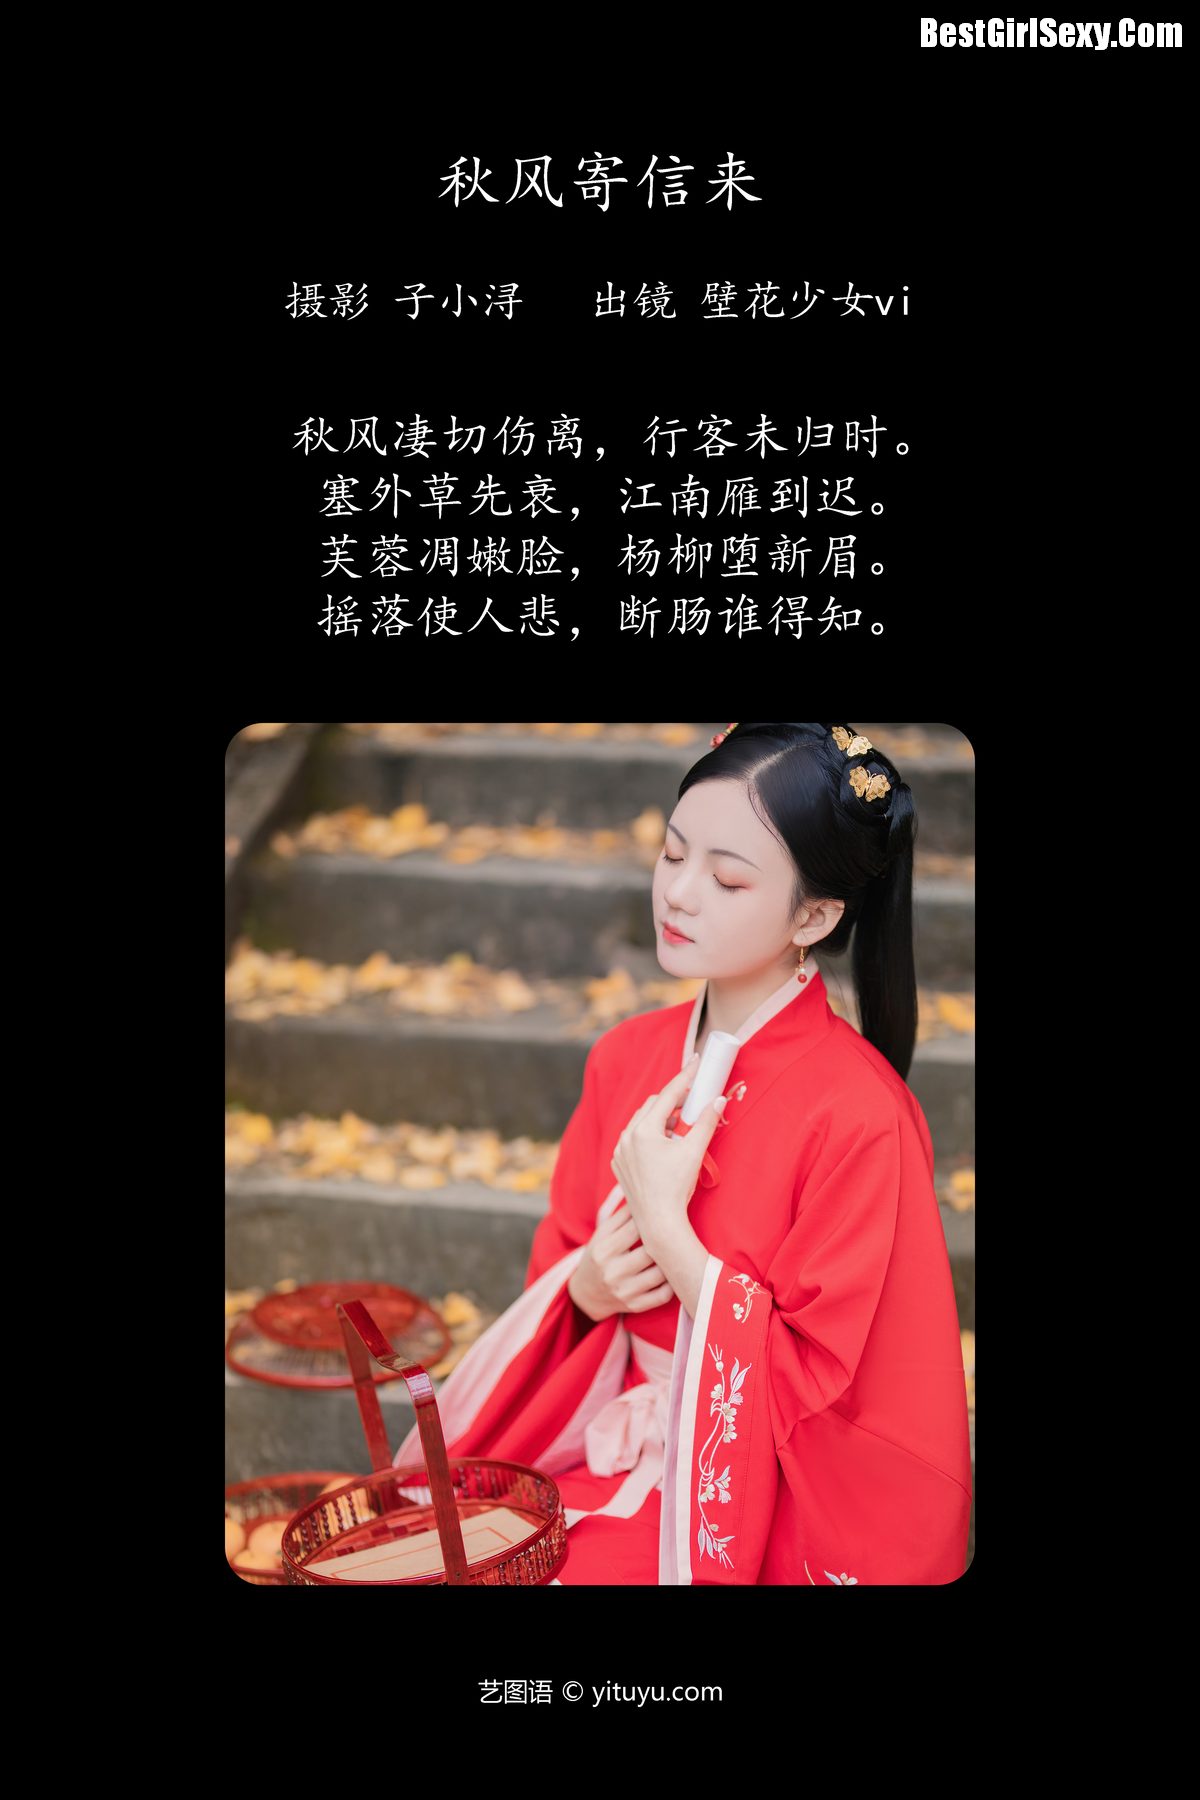 YiTuYu艺图语 Vol 4077 Bi Hua Shao Nu VI 0002 3835075312.jpg